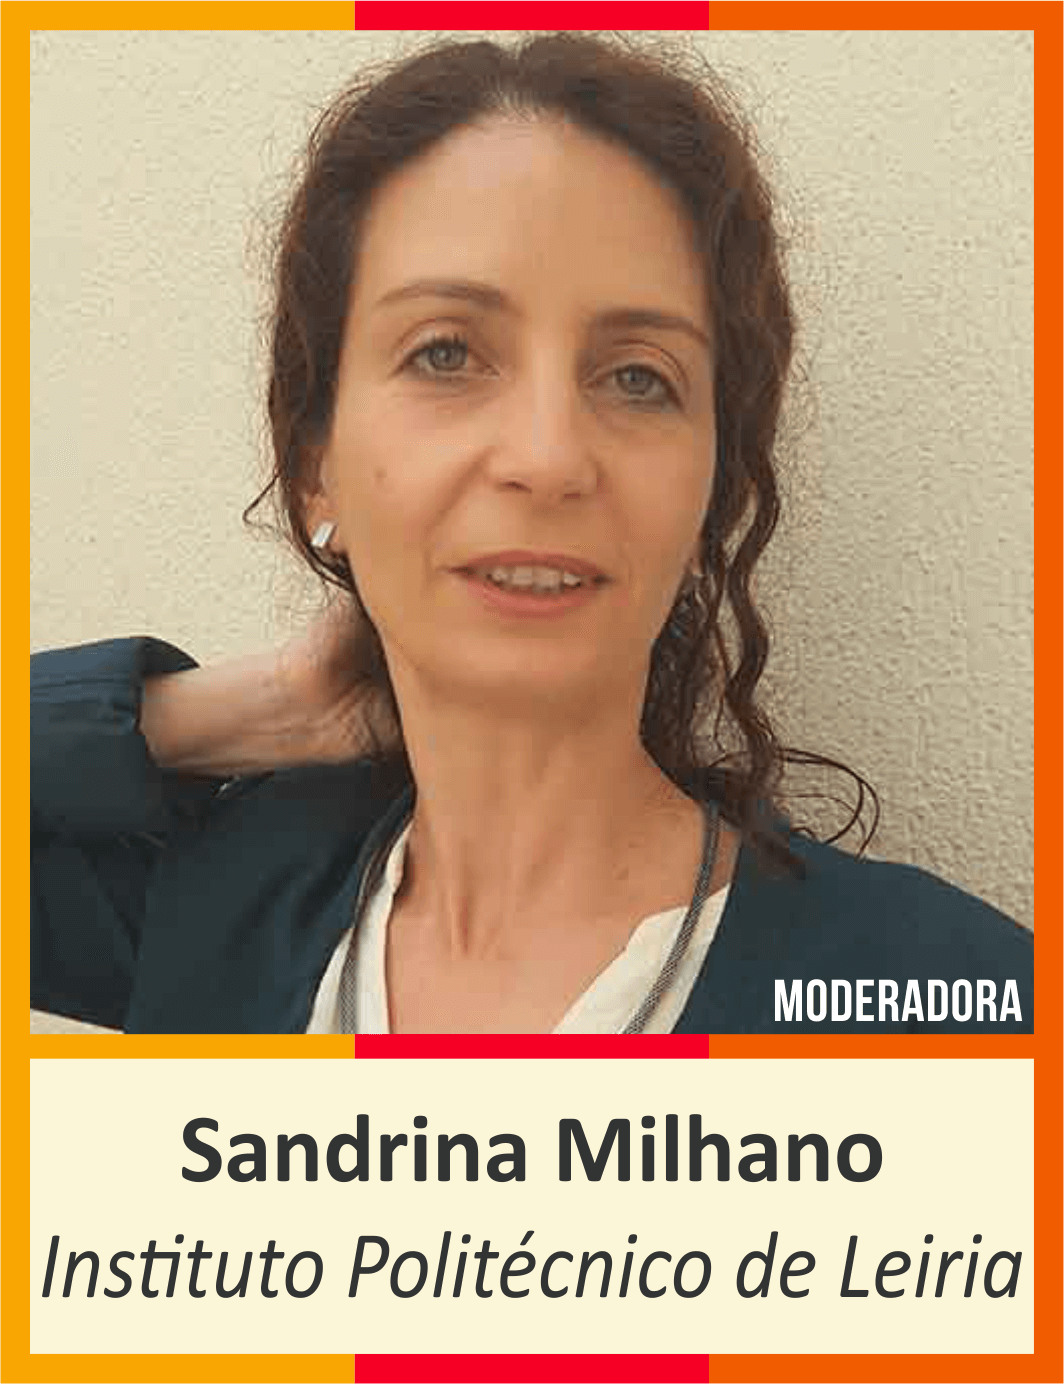 Sandrina Milhano - Instituto Politécnico de Leiria